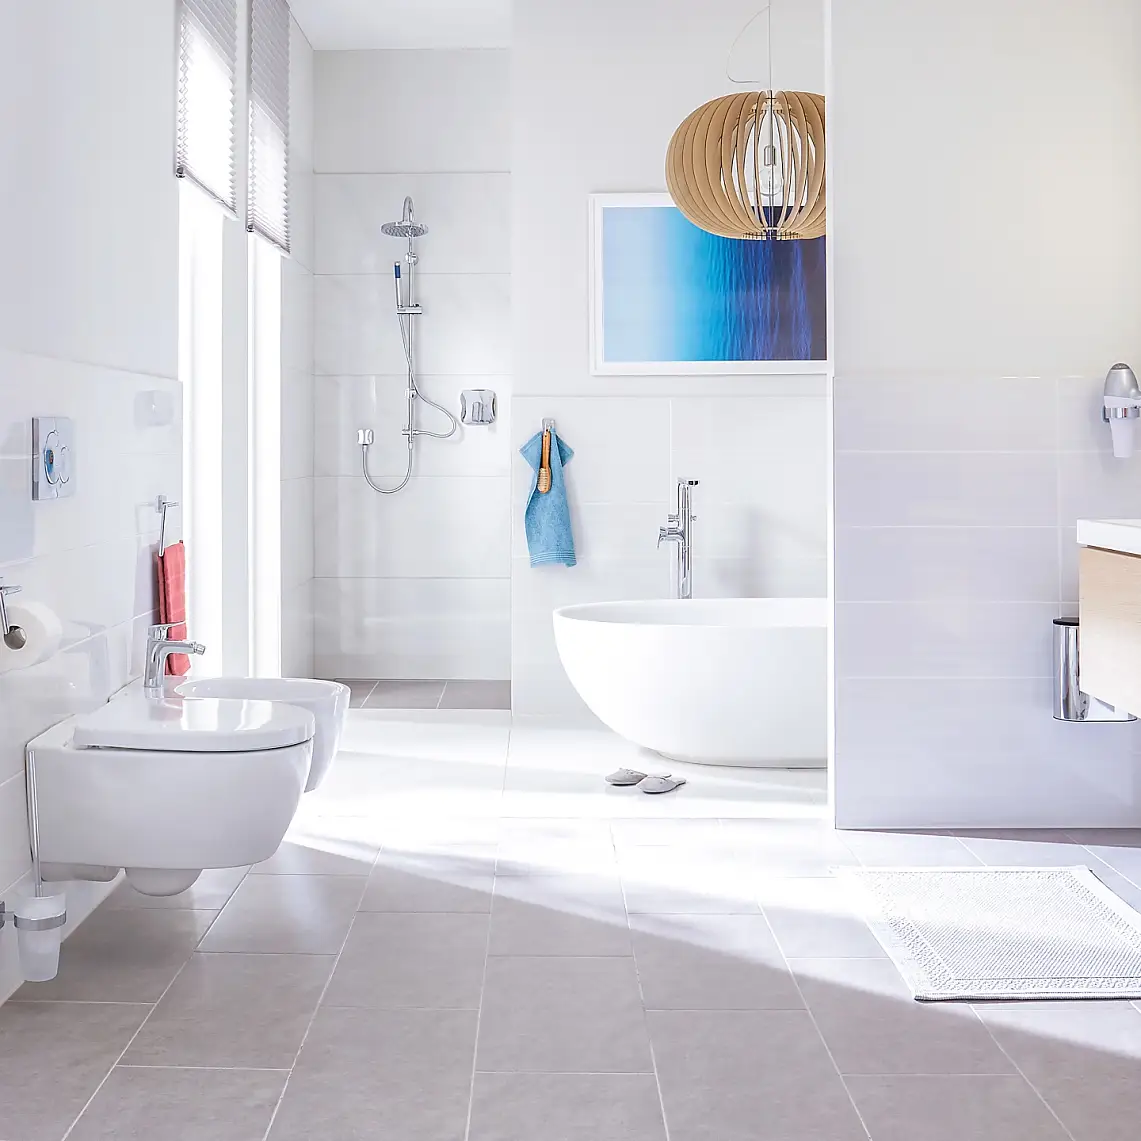 La perfection d’un design élégant pour les salles de bains luxueuses.